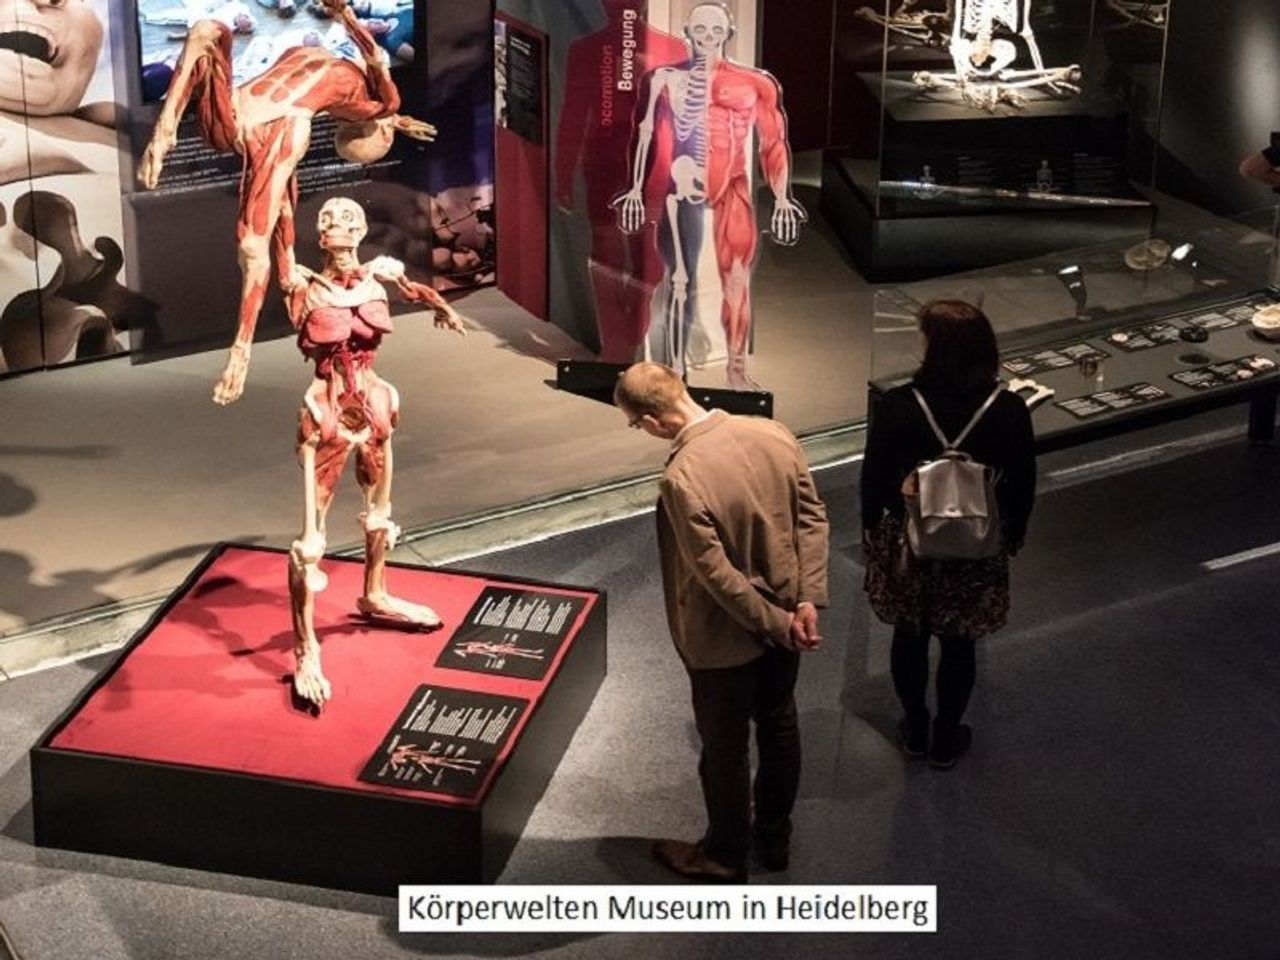 Kurz-mal Heidelberg mit Körperwelten Museum - 4 Tage